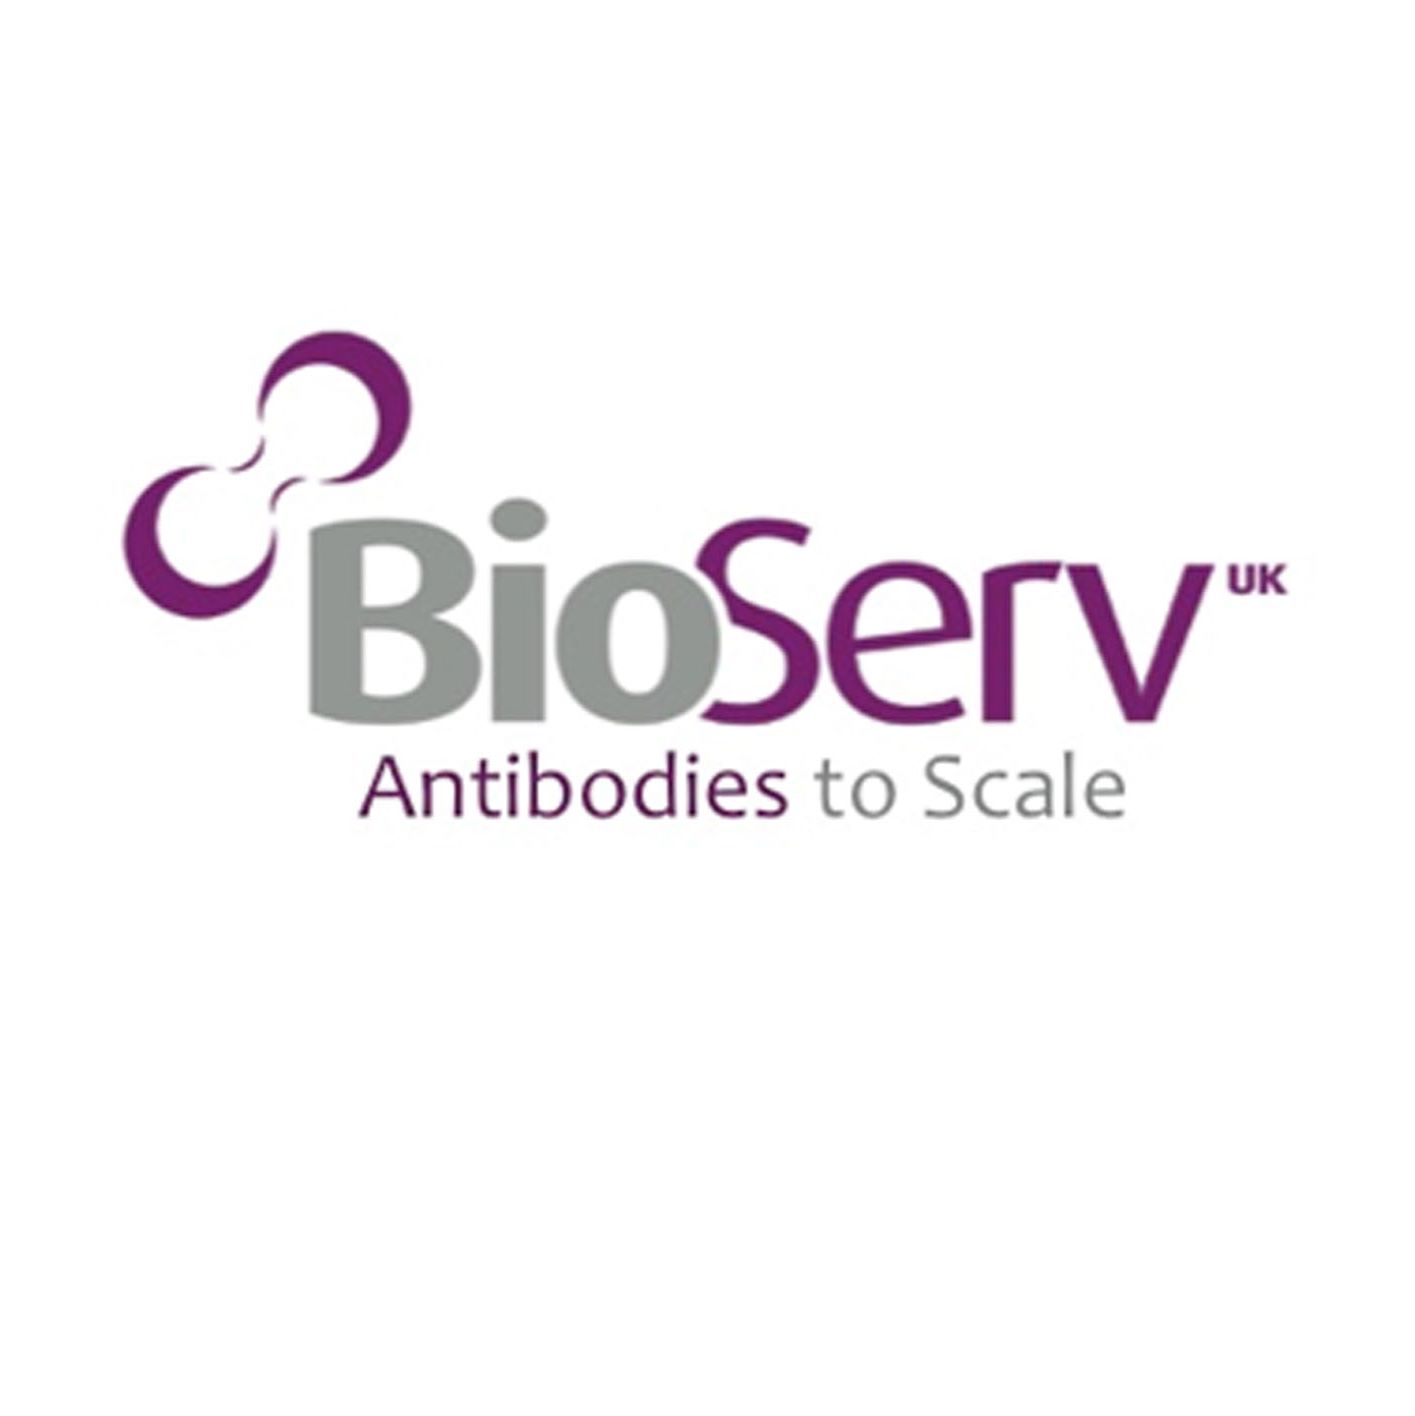 BioServ专业生产加工生物分子和抗体